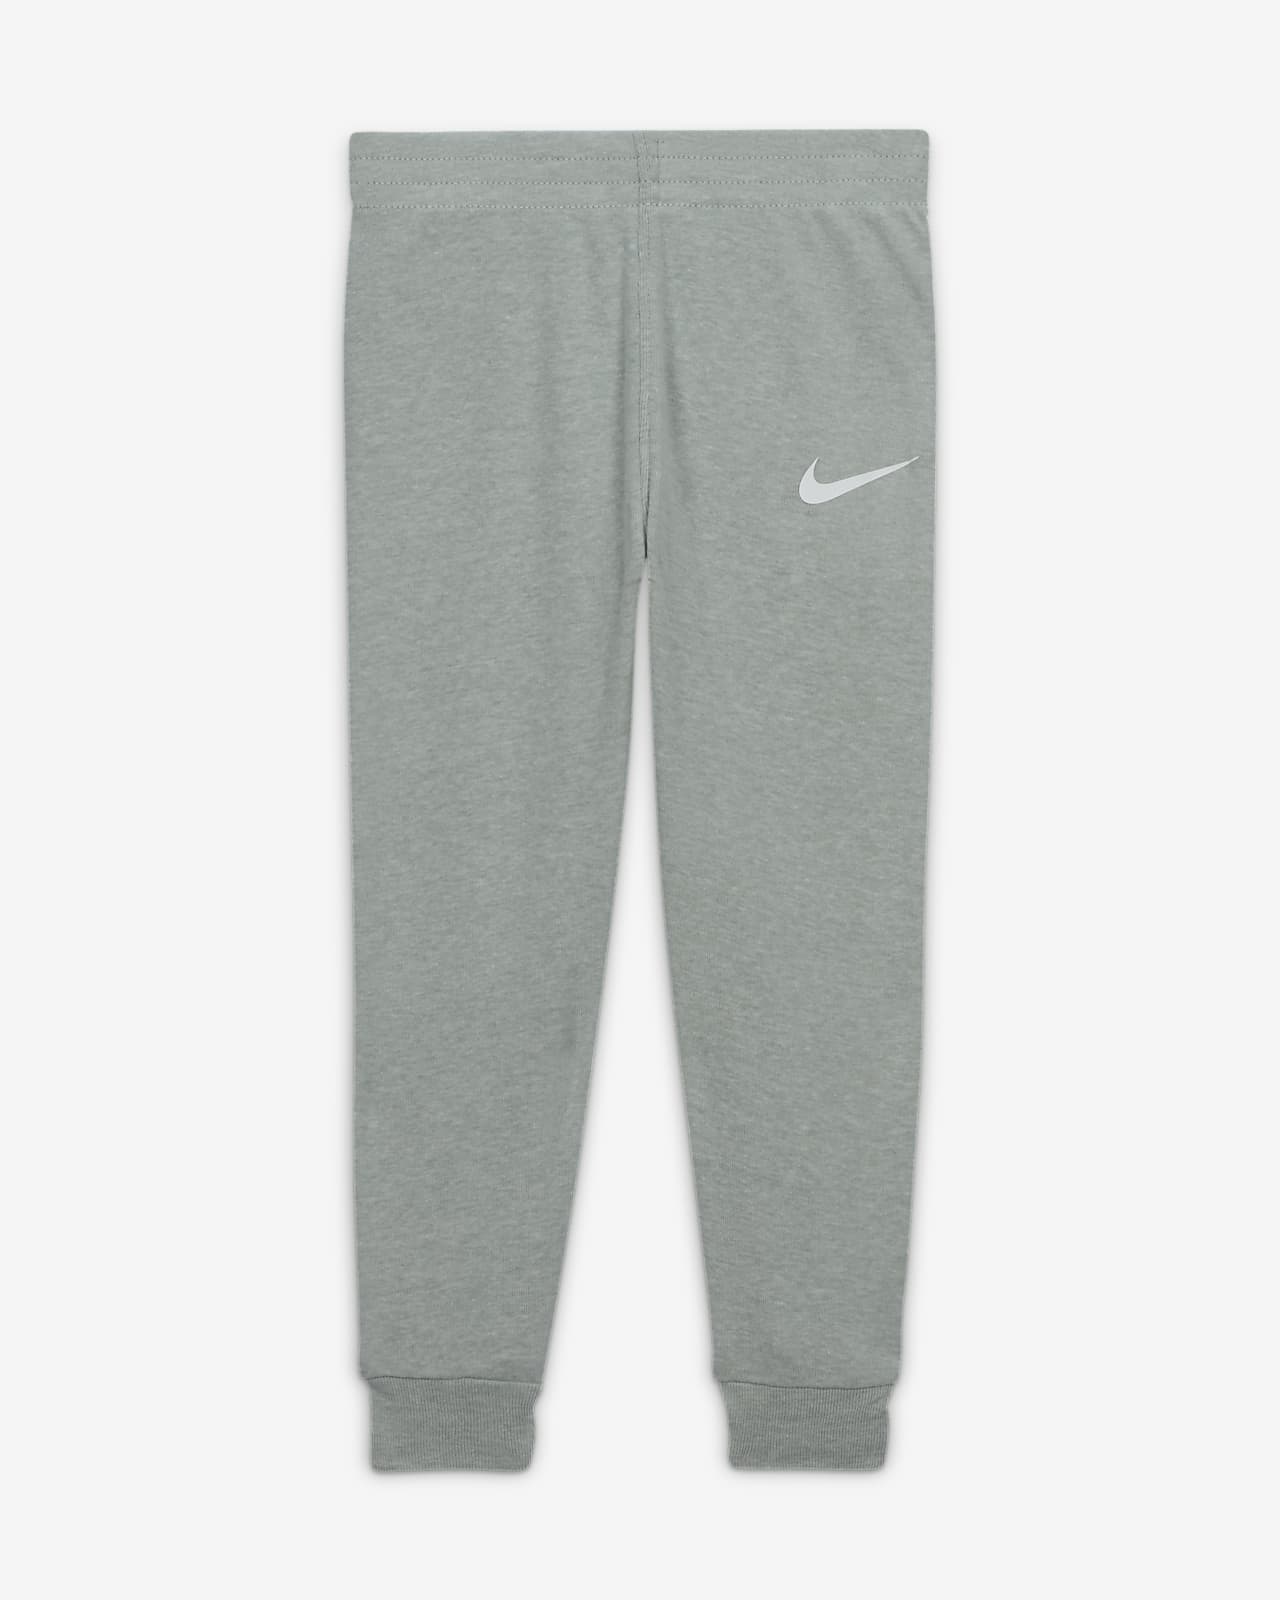 Nike Essentials Baby Set Pants Set. 3-Piece 3-Piece